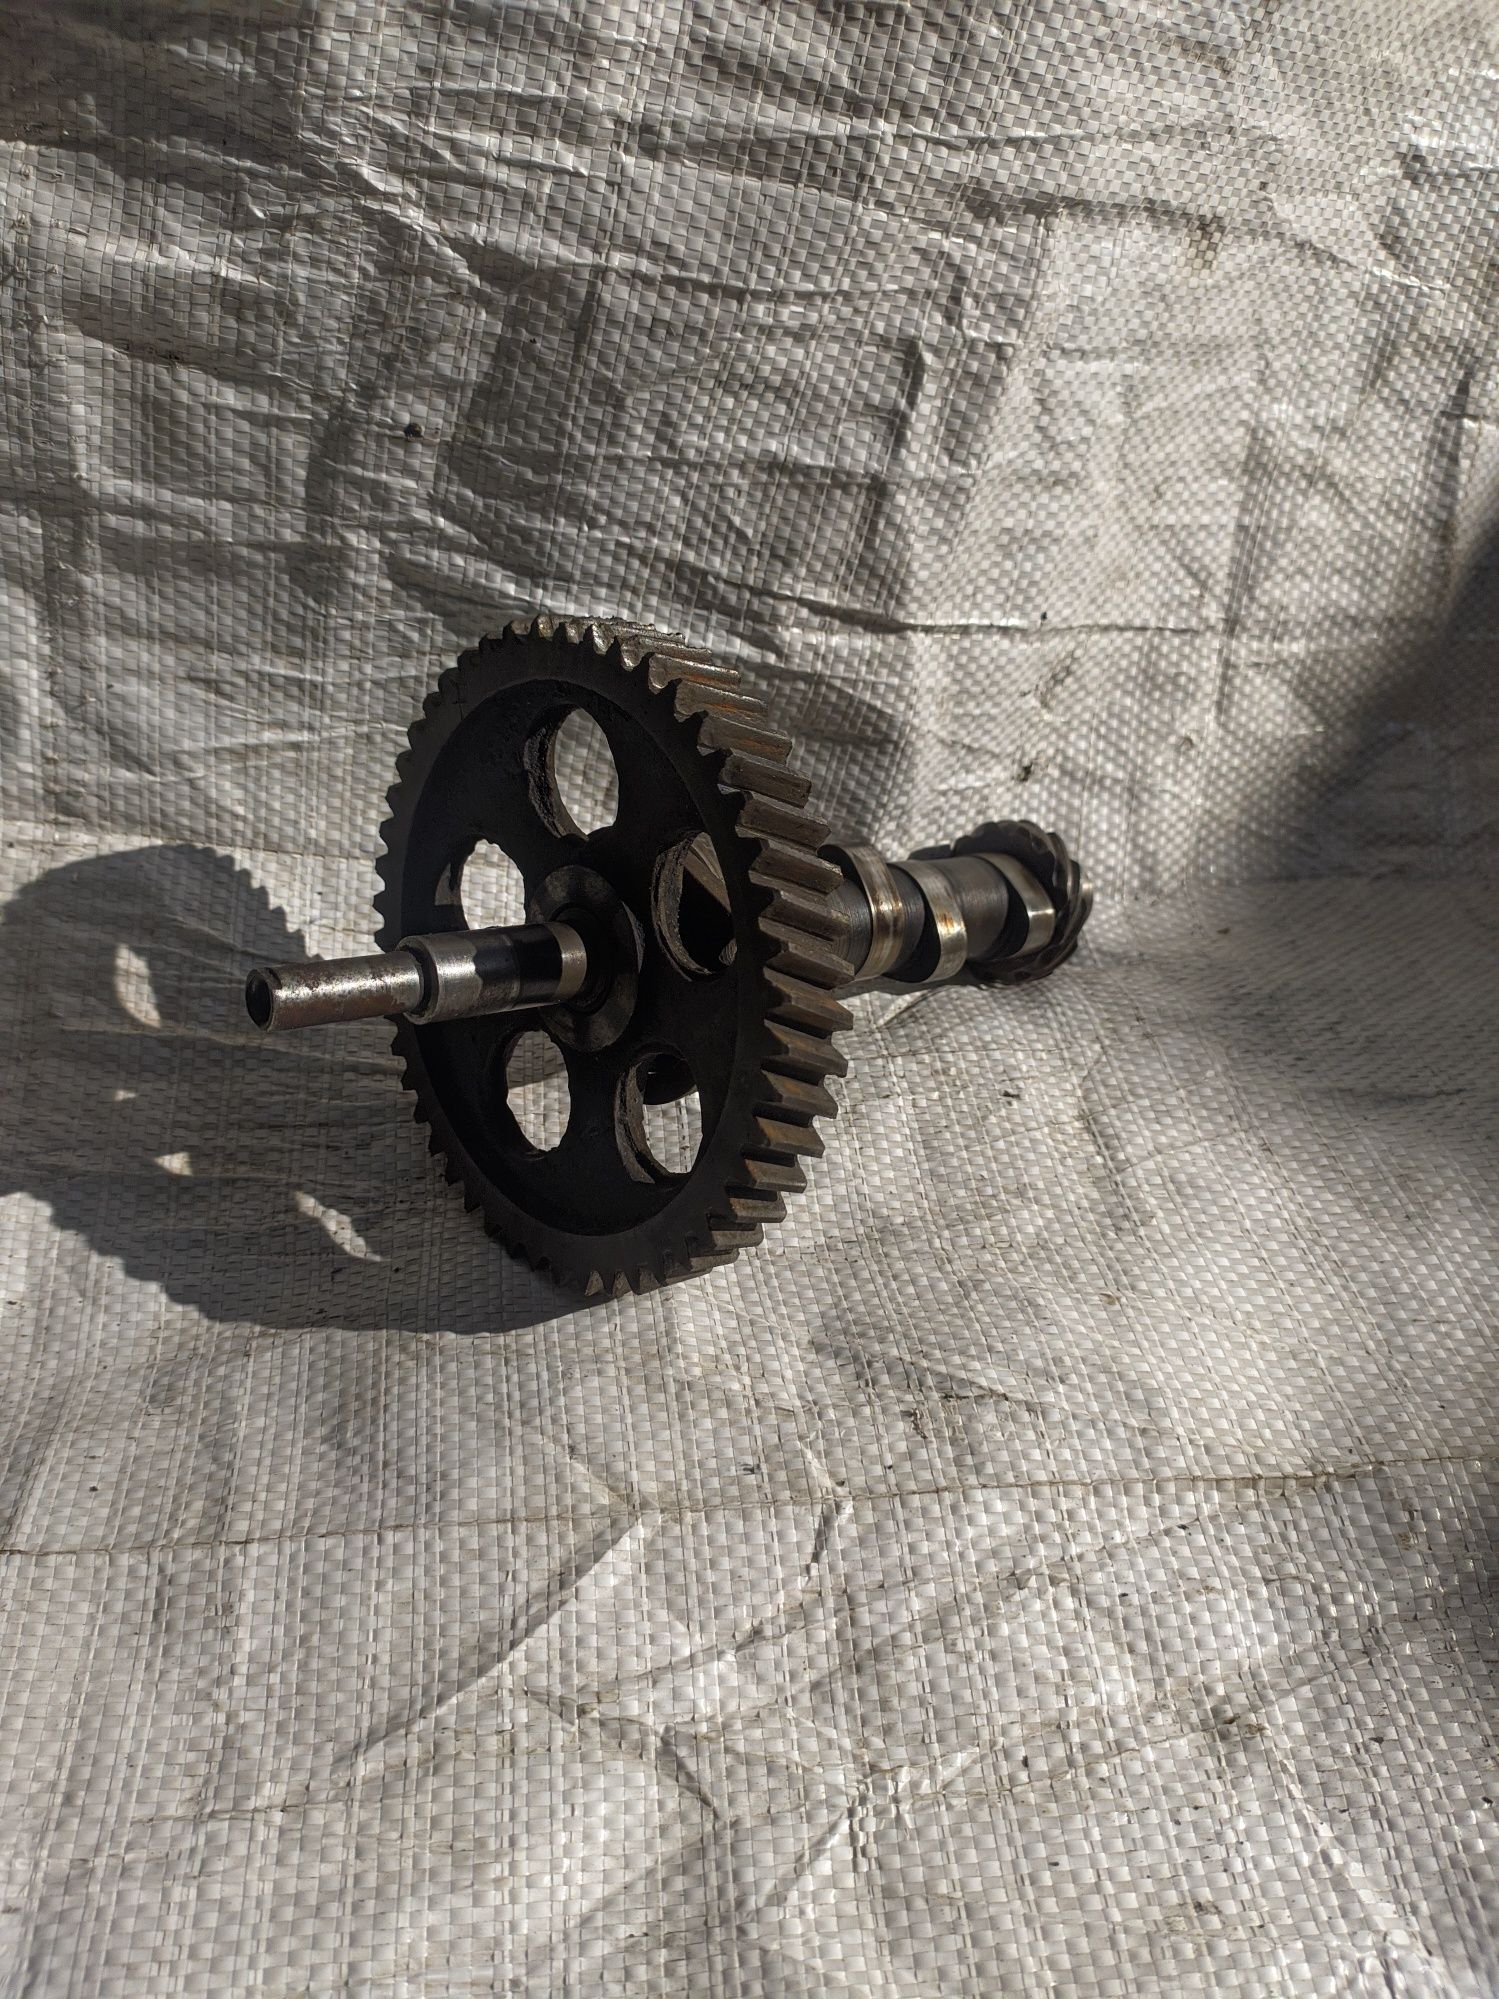 Распределительный вал с зубчатым колесом смазочного насоса урал м66